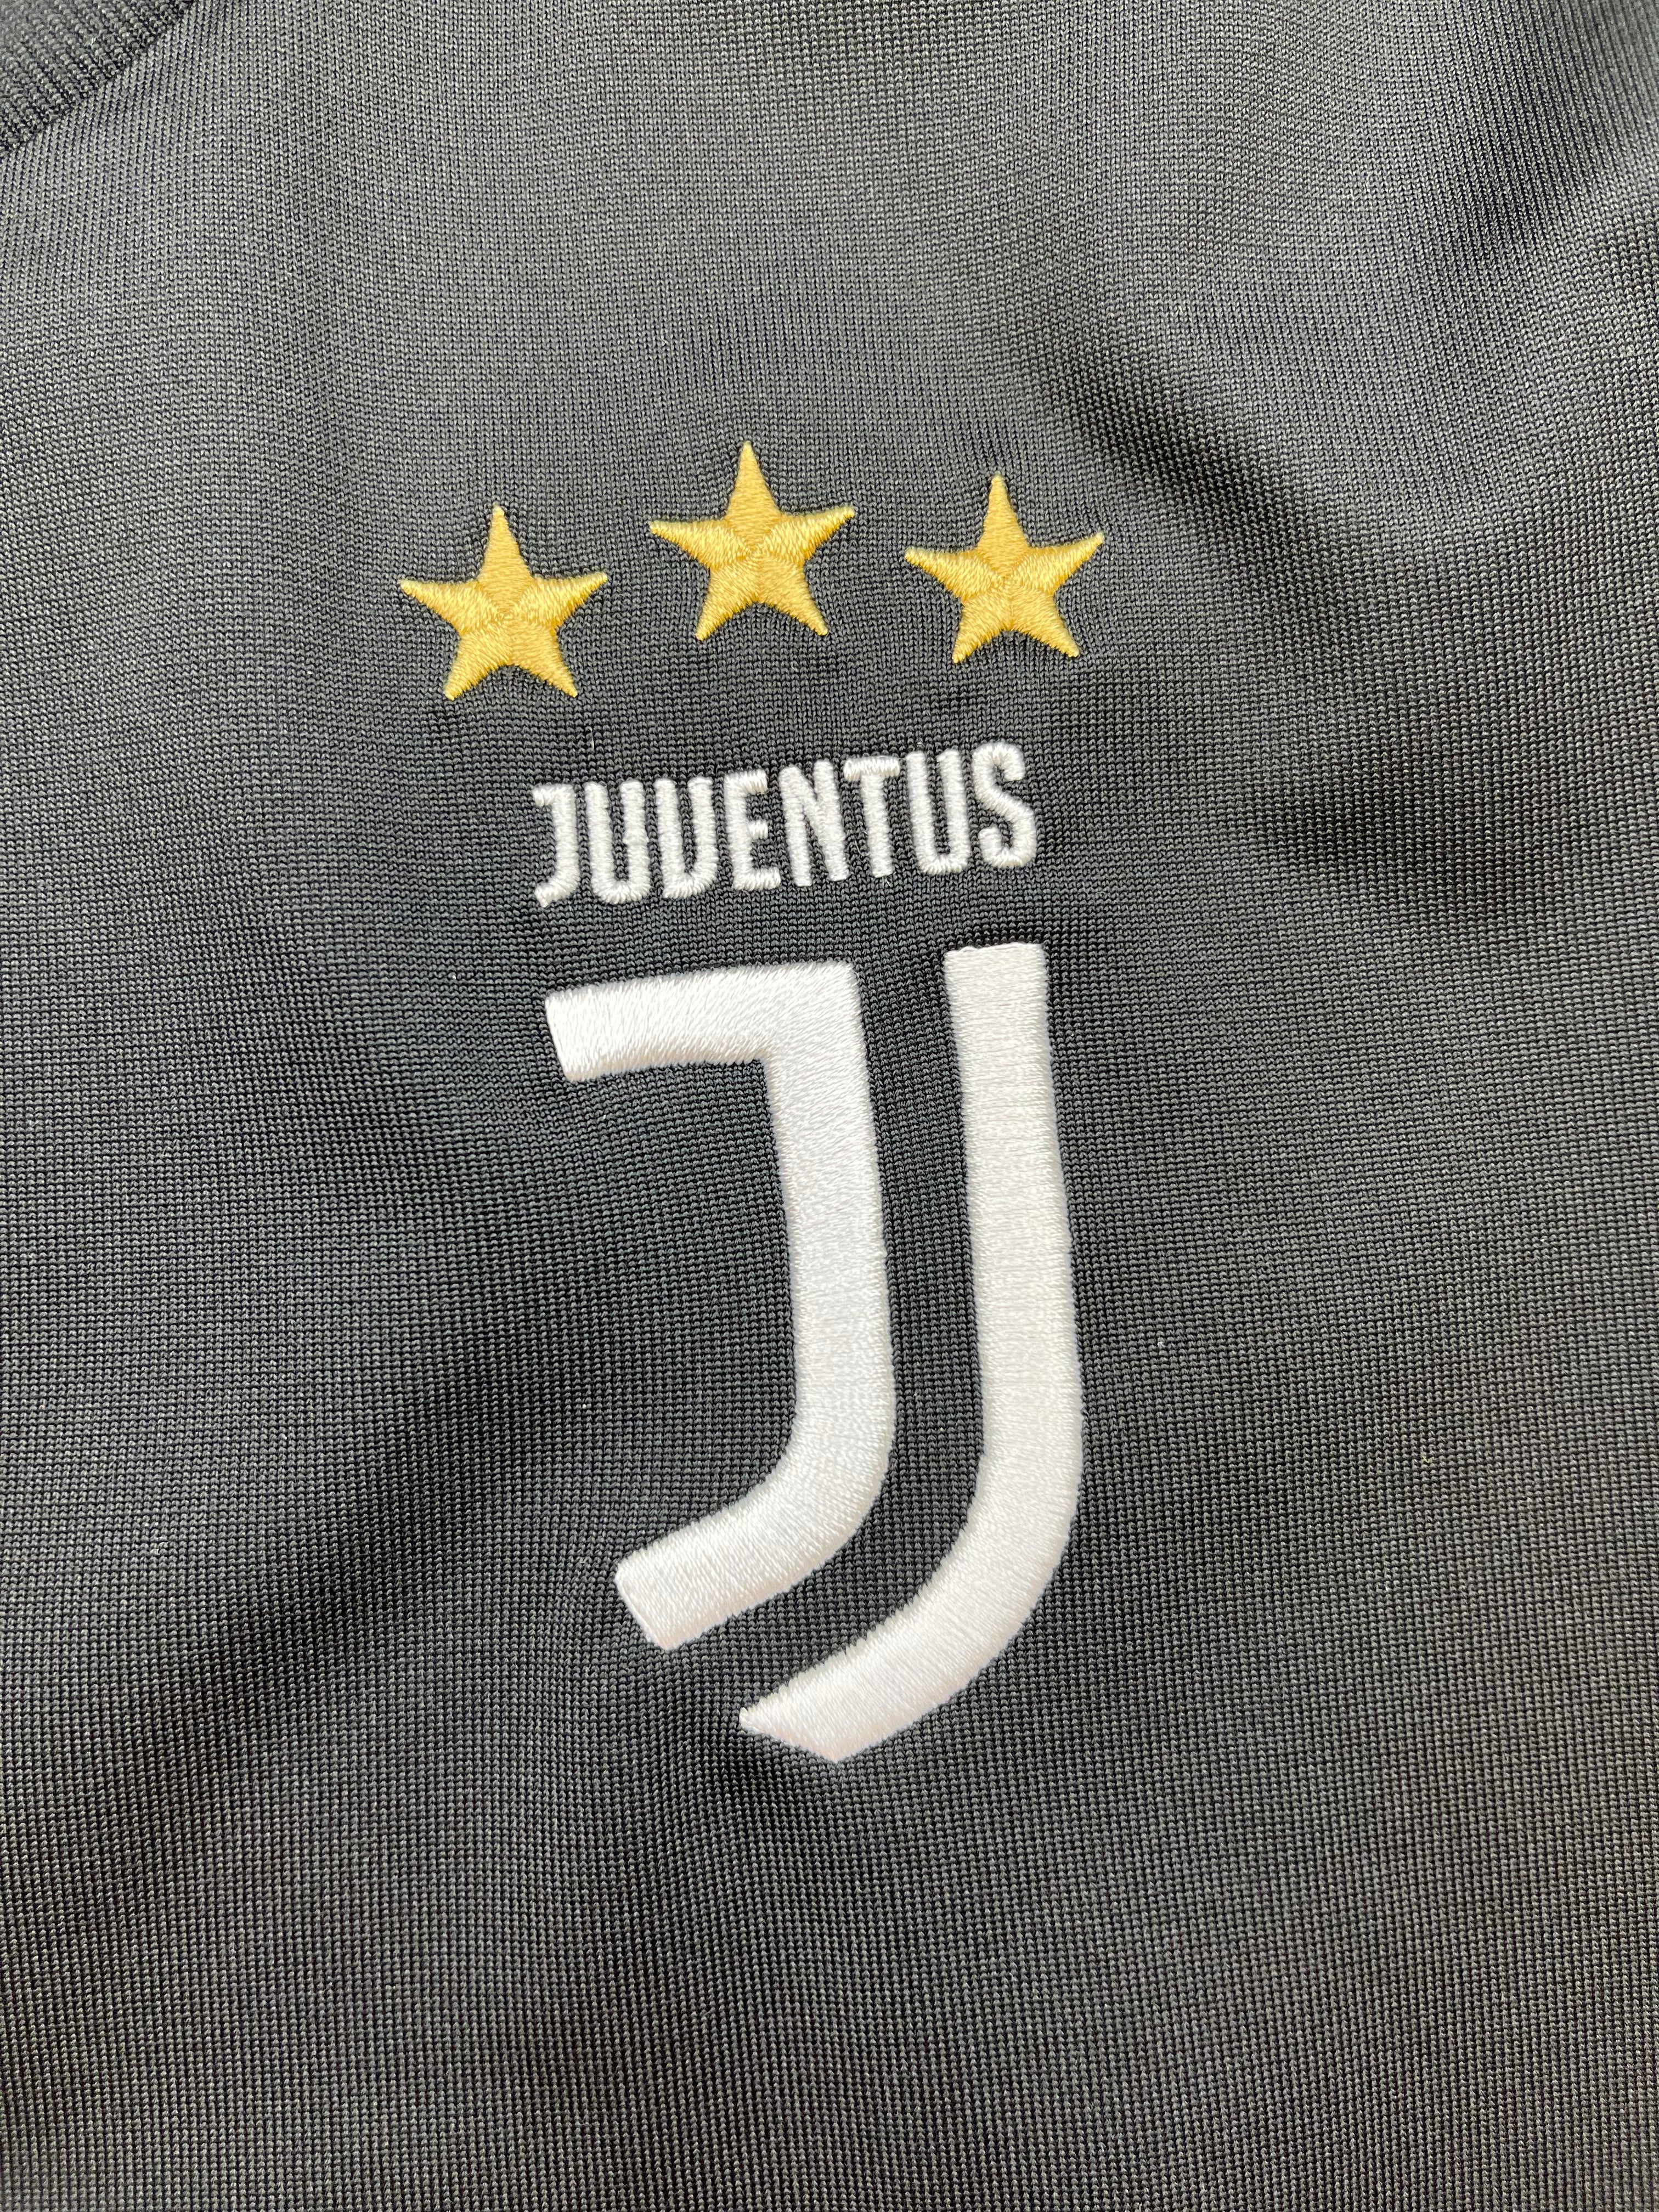 2019/20 Juventus Home Shirt (L) 9/10